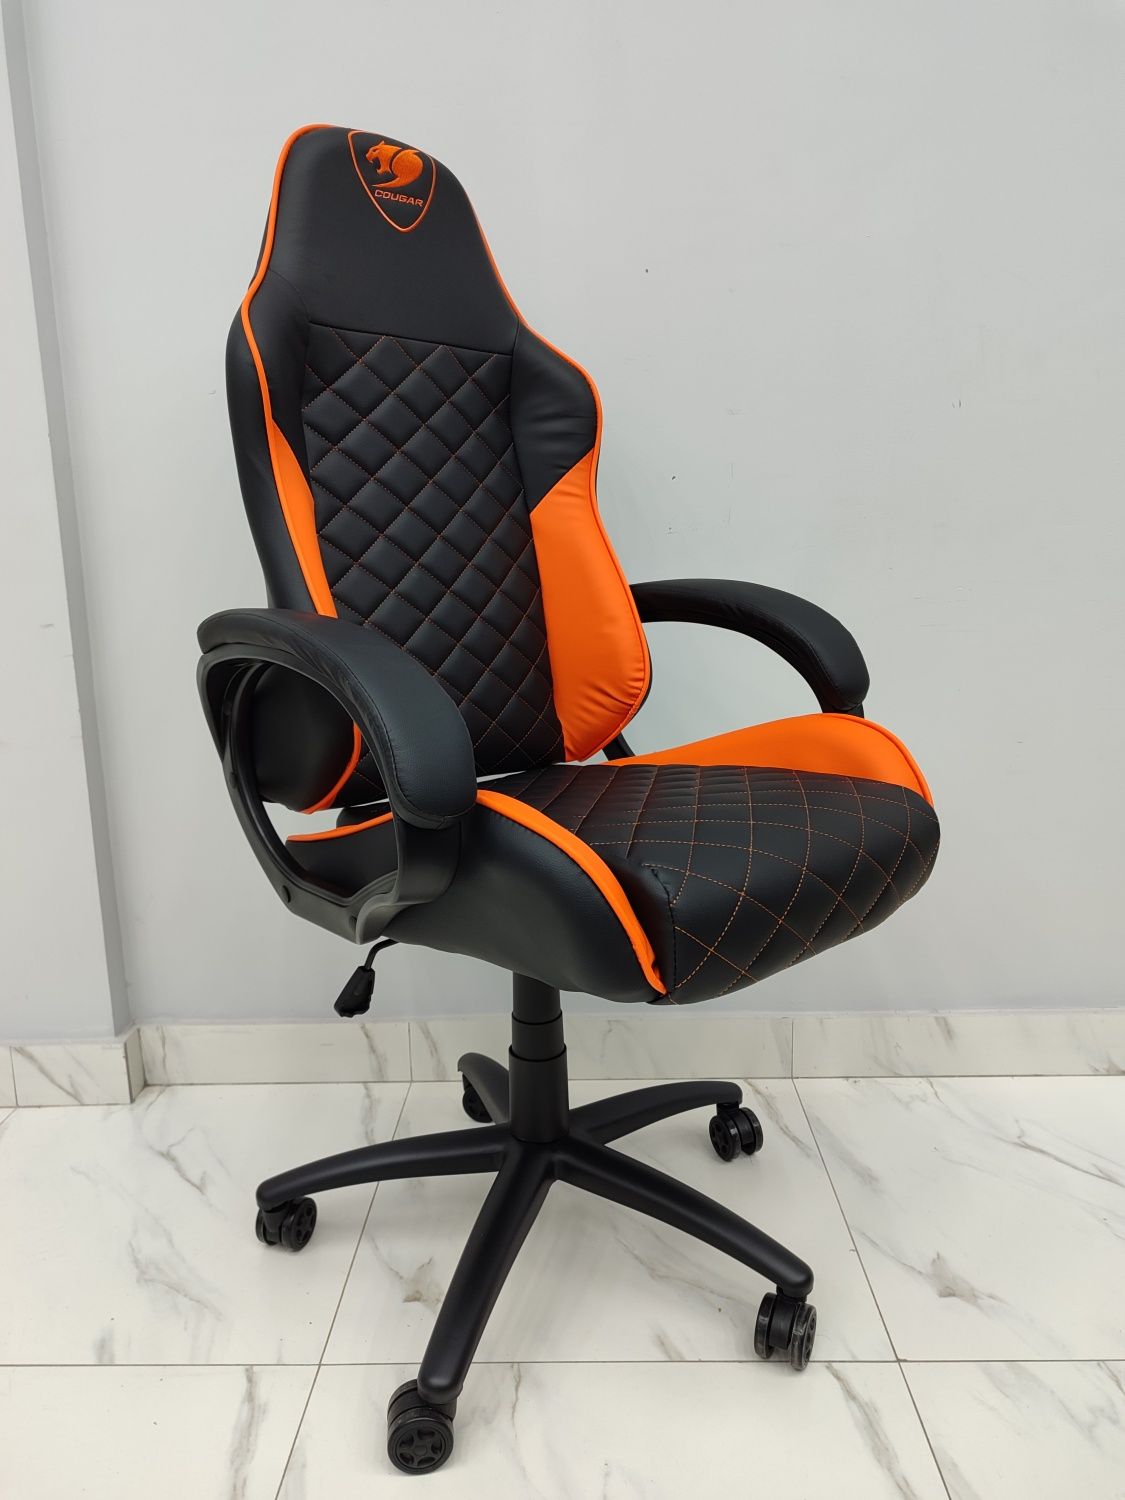 Gamers chair, Геймерское кресло, Компьютерное игровое кресло  Cougar